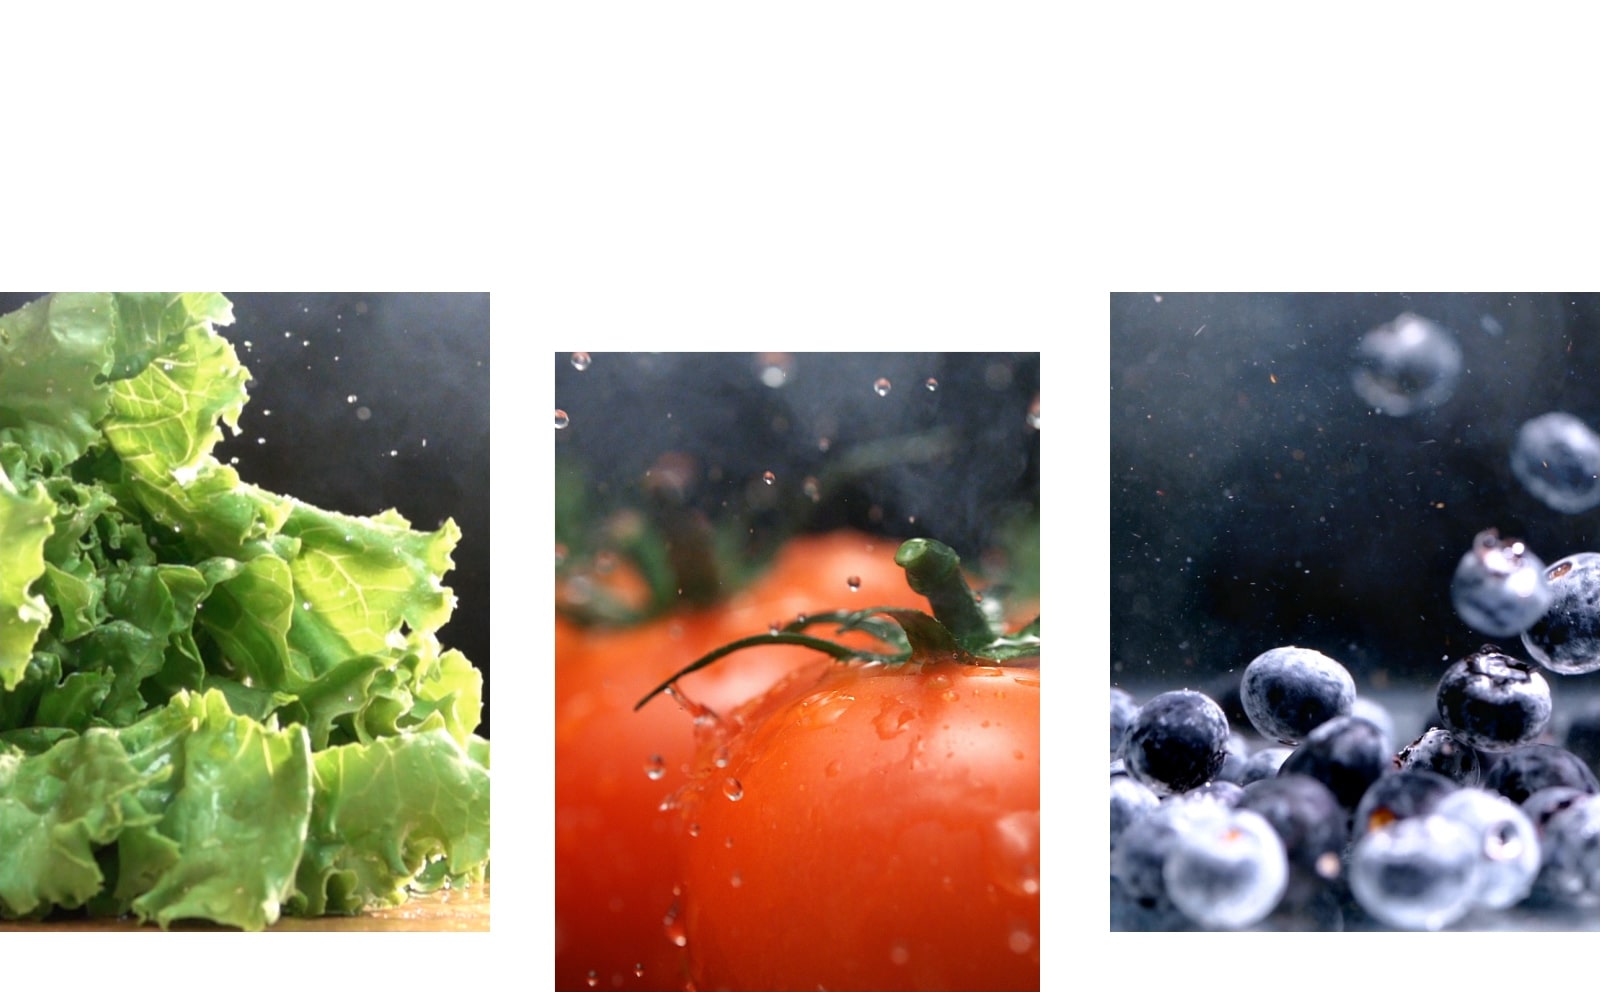 Video cận cảnh nước nhỏ giọt từ rau diếp xanh giòn bên cạnh video cận cảnh nước rơi trên cà chua đỏ tươi, bên cạnh video về quả việt quất ướt sáng màu di chuyển xung quanh.